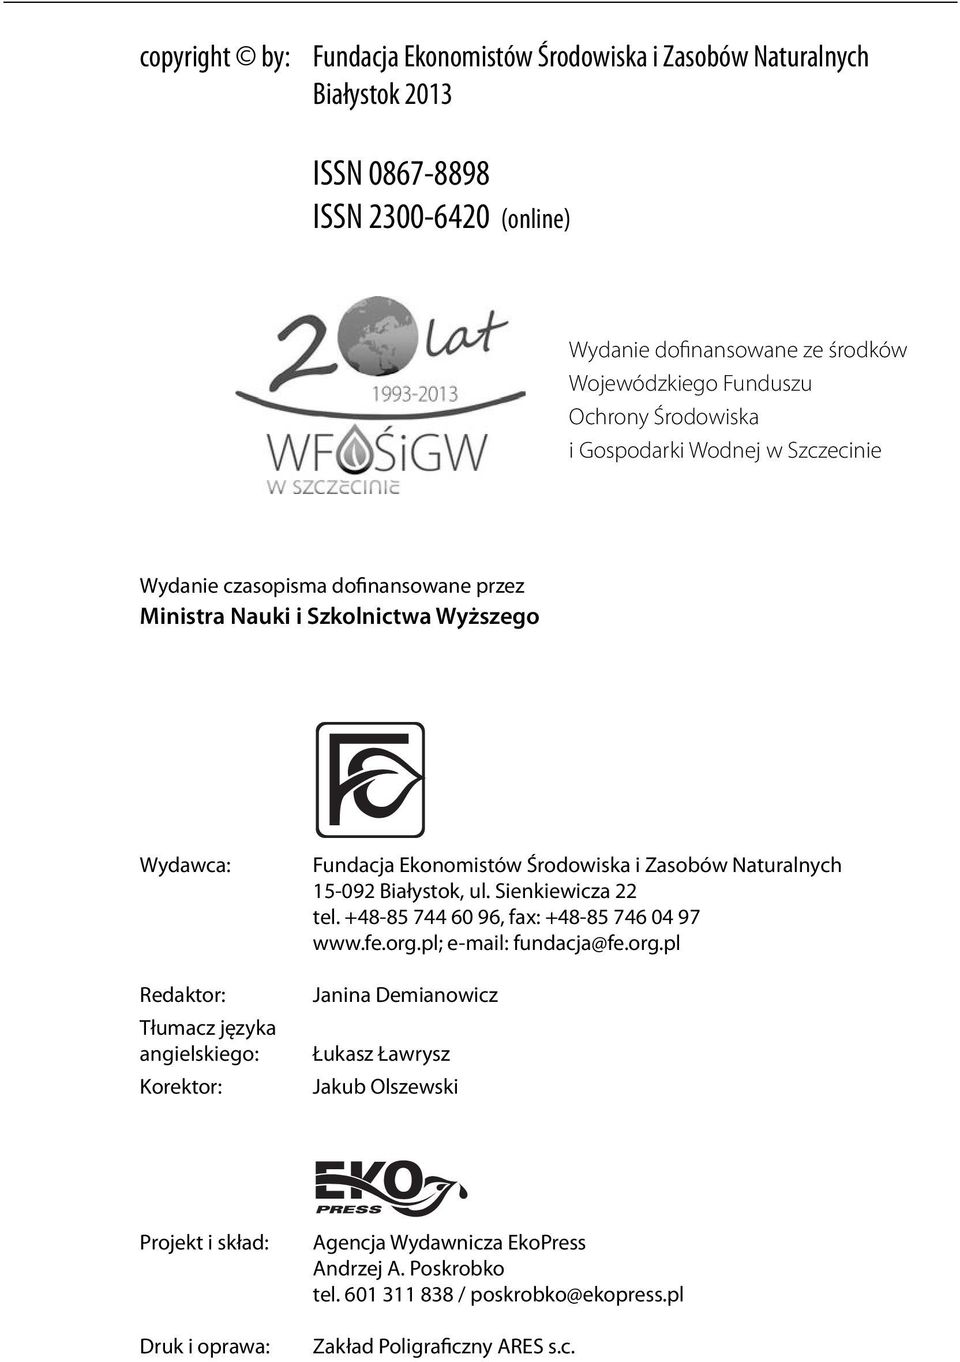 Fundacja Ekonomistów Środowiska i Zasobów Naturalnych 15-092 Białystok, ul. Sienkiewicza 22 tel. +48-85 744 60 96, fax: +48-85 746 04 97 www.fe.org.